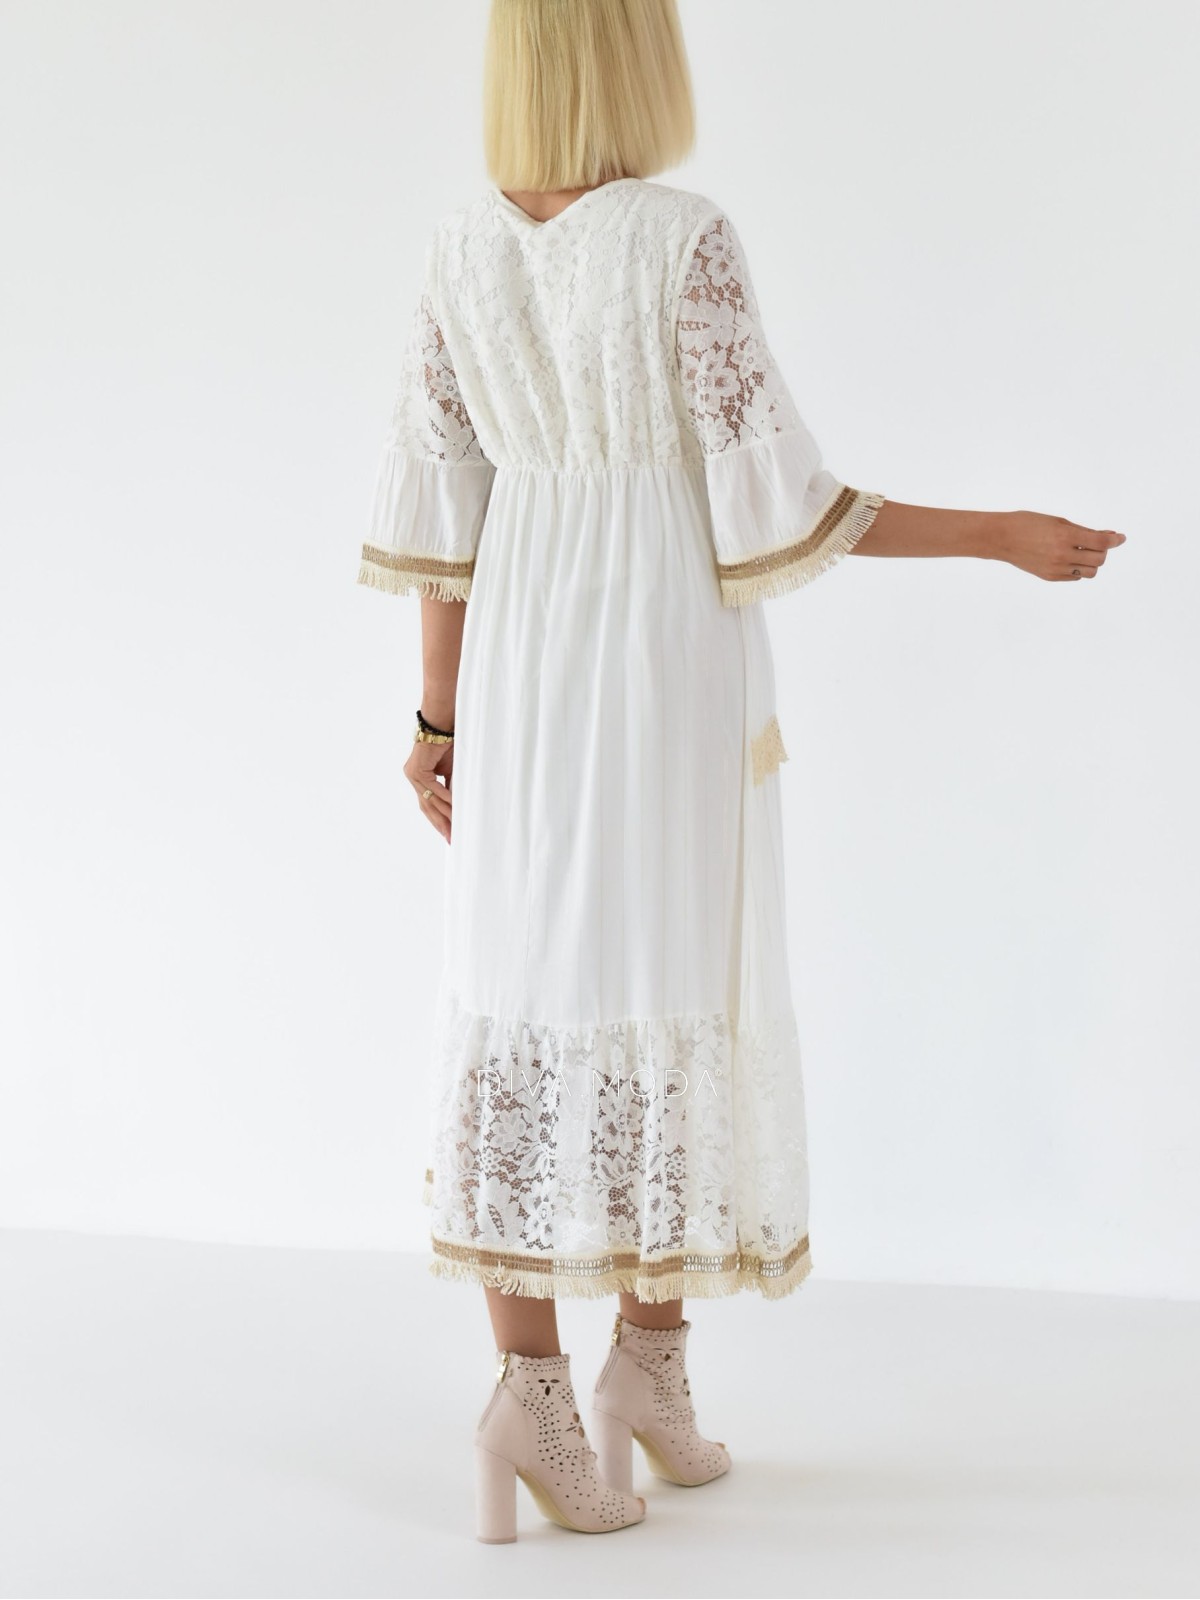 Letní maxi šaty s třásněmi Becca bílé A 255